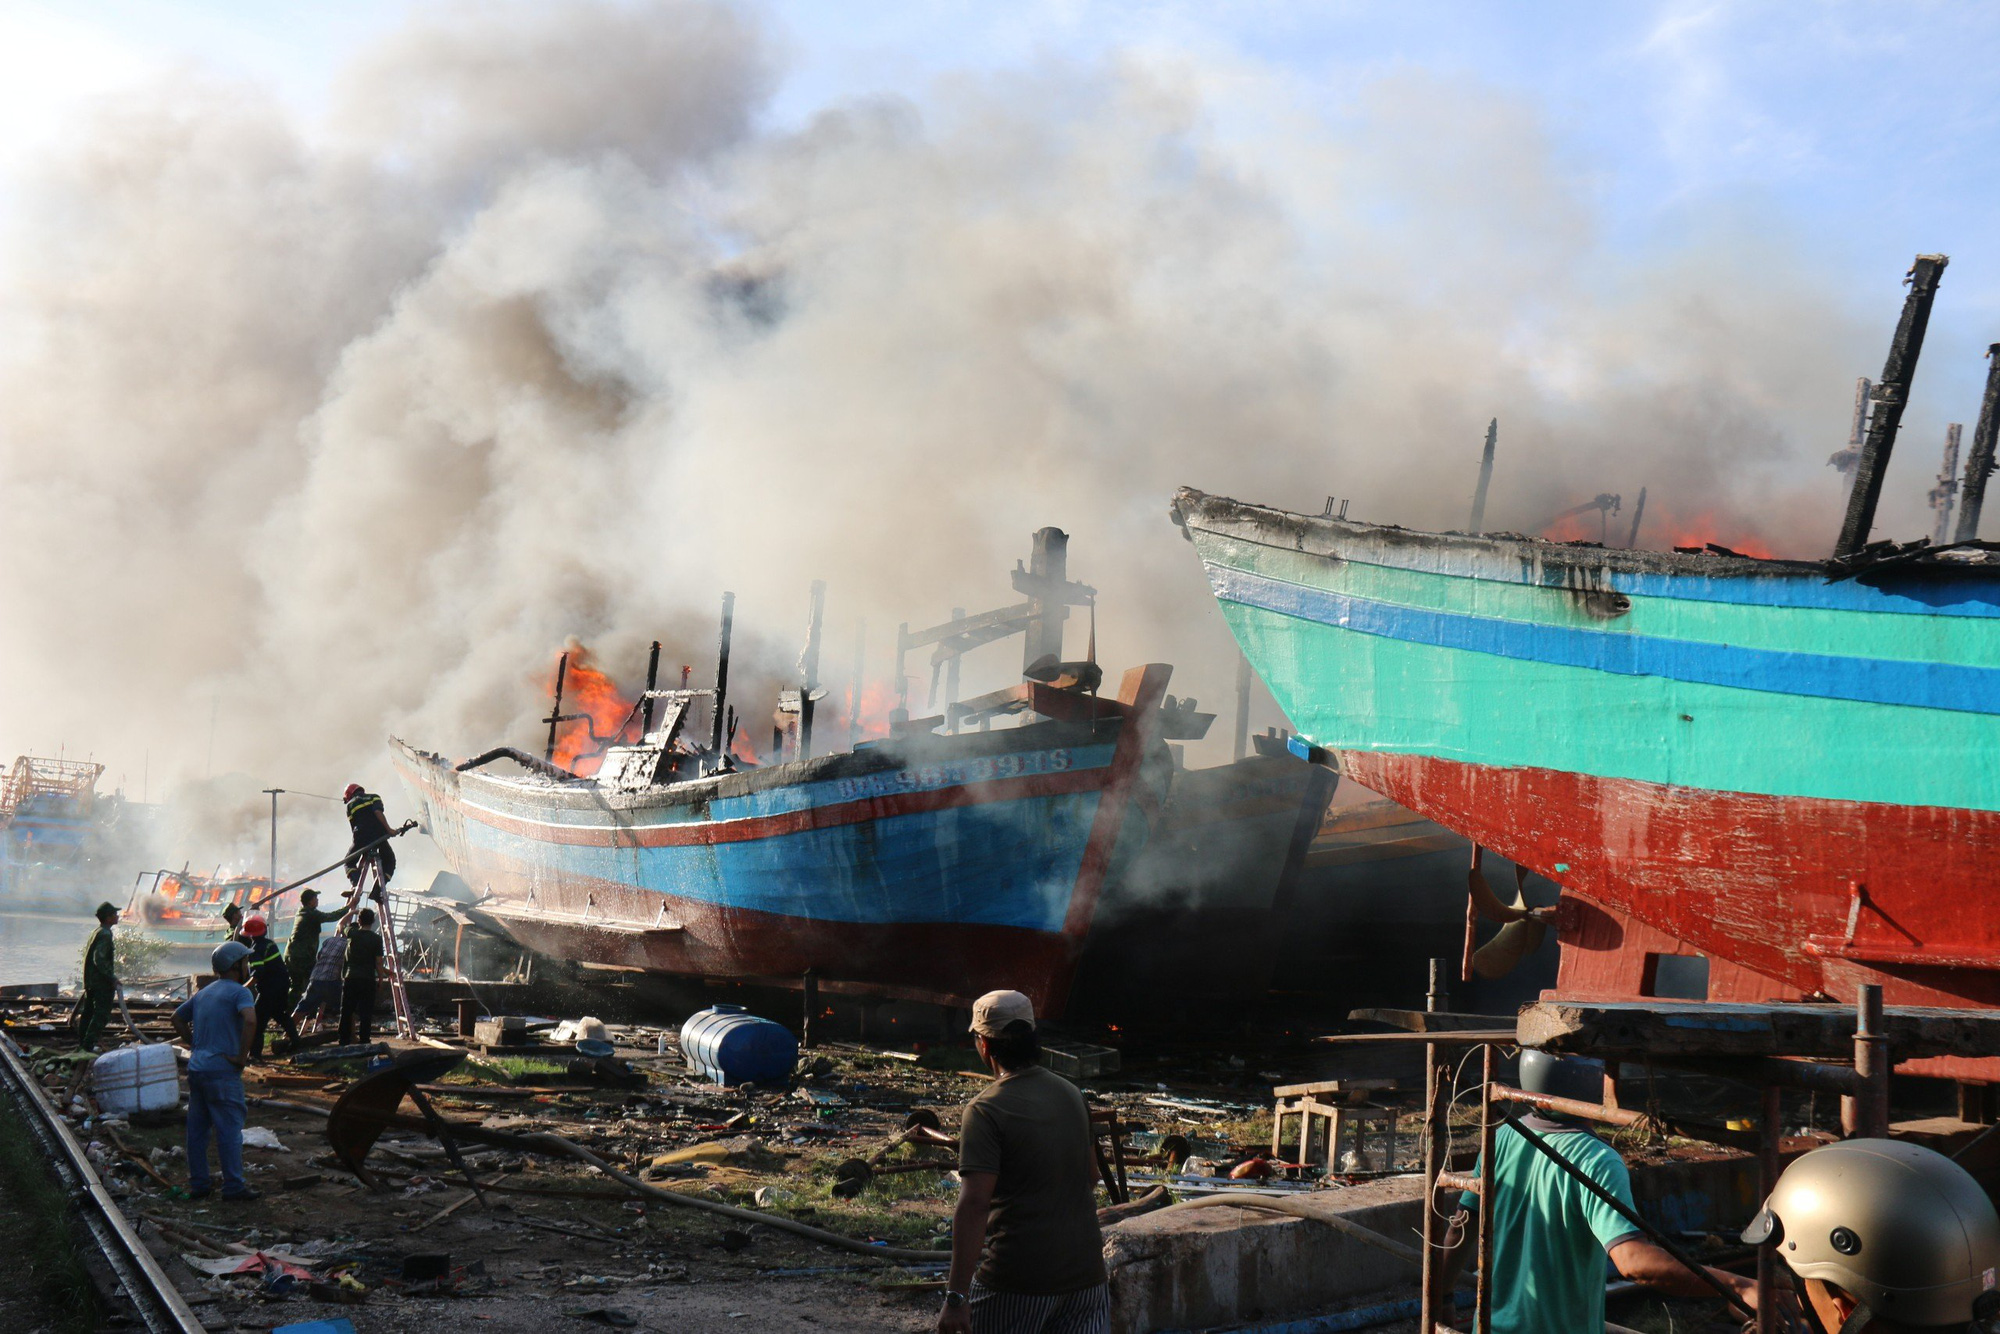 Hiện trường vụ cháy 11 tàu cá ở TP Phan Thiết chiều 7-12 - Ảnh: MAI THỨC